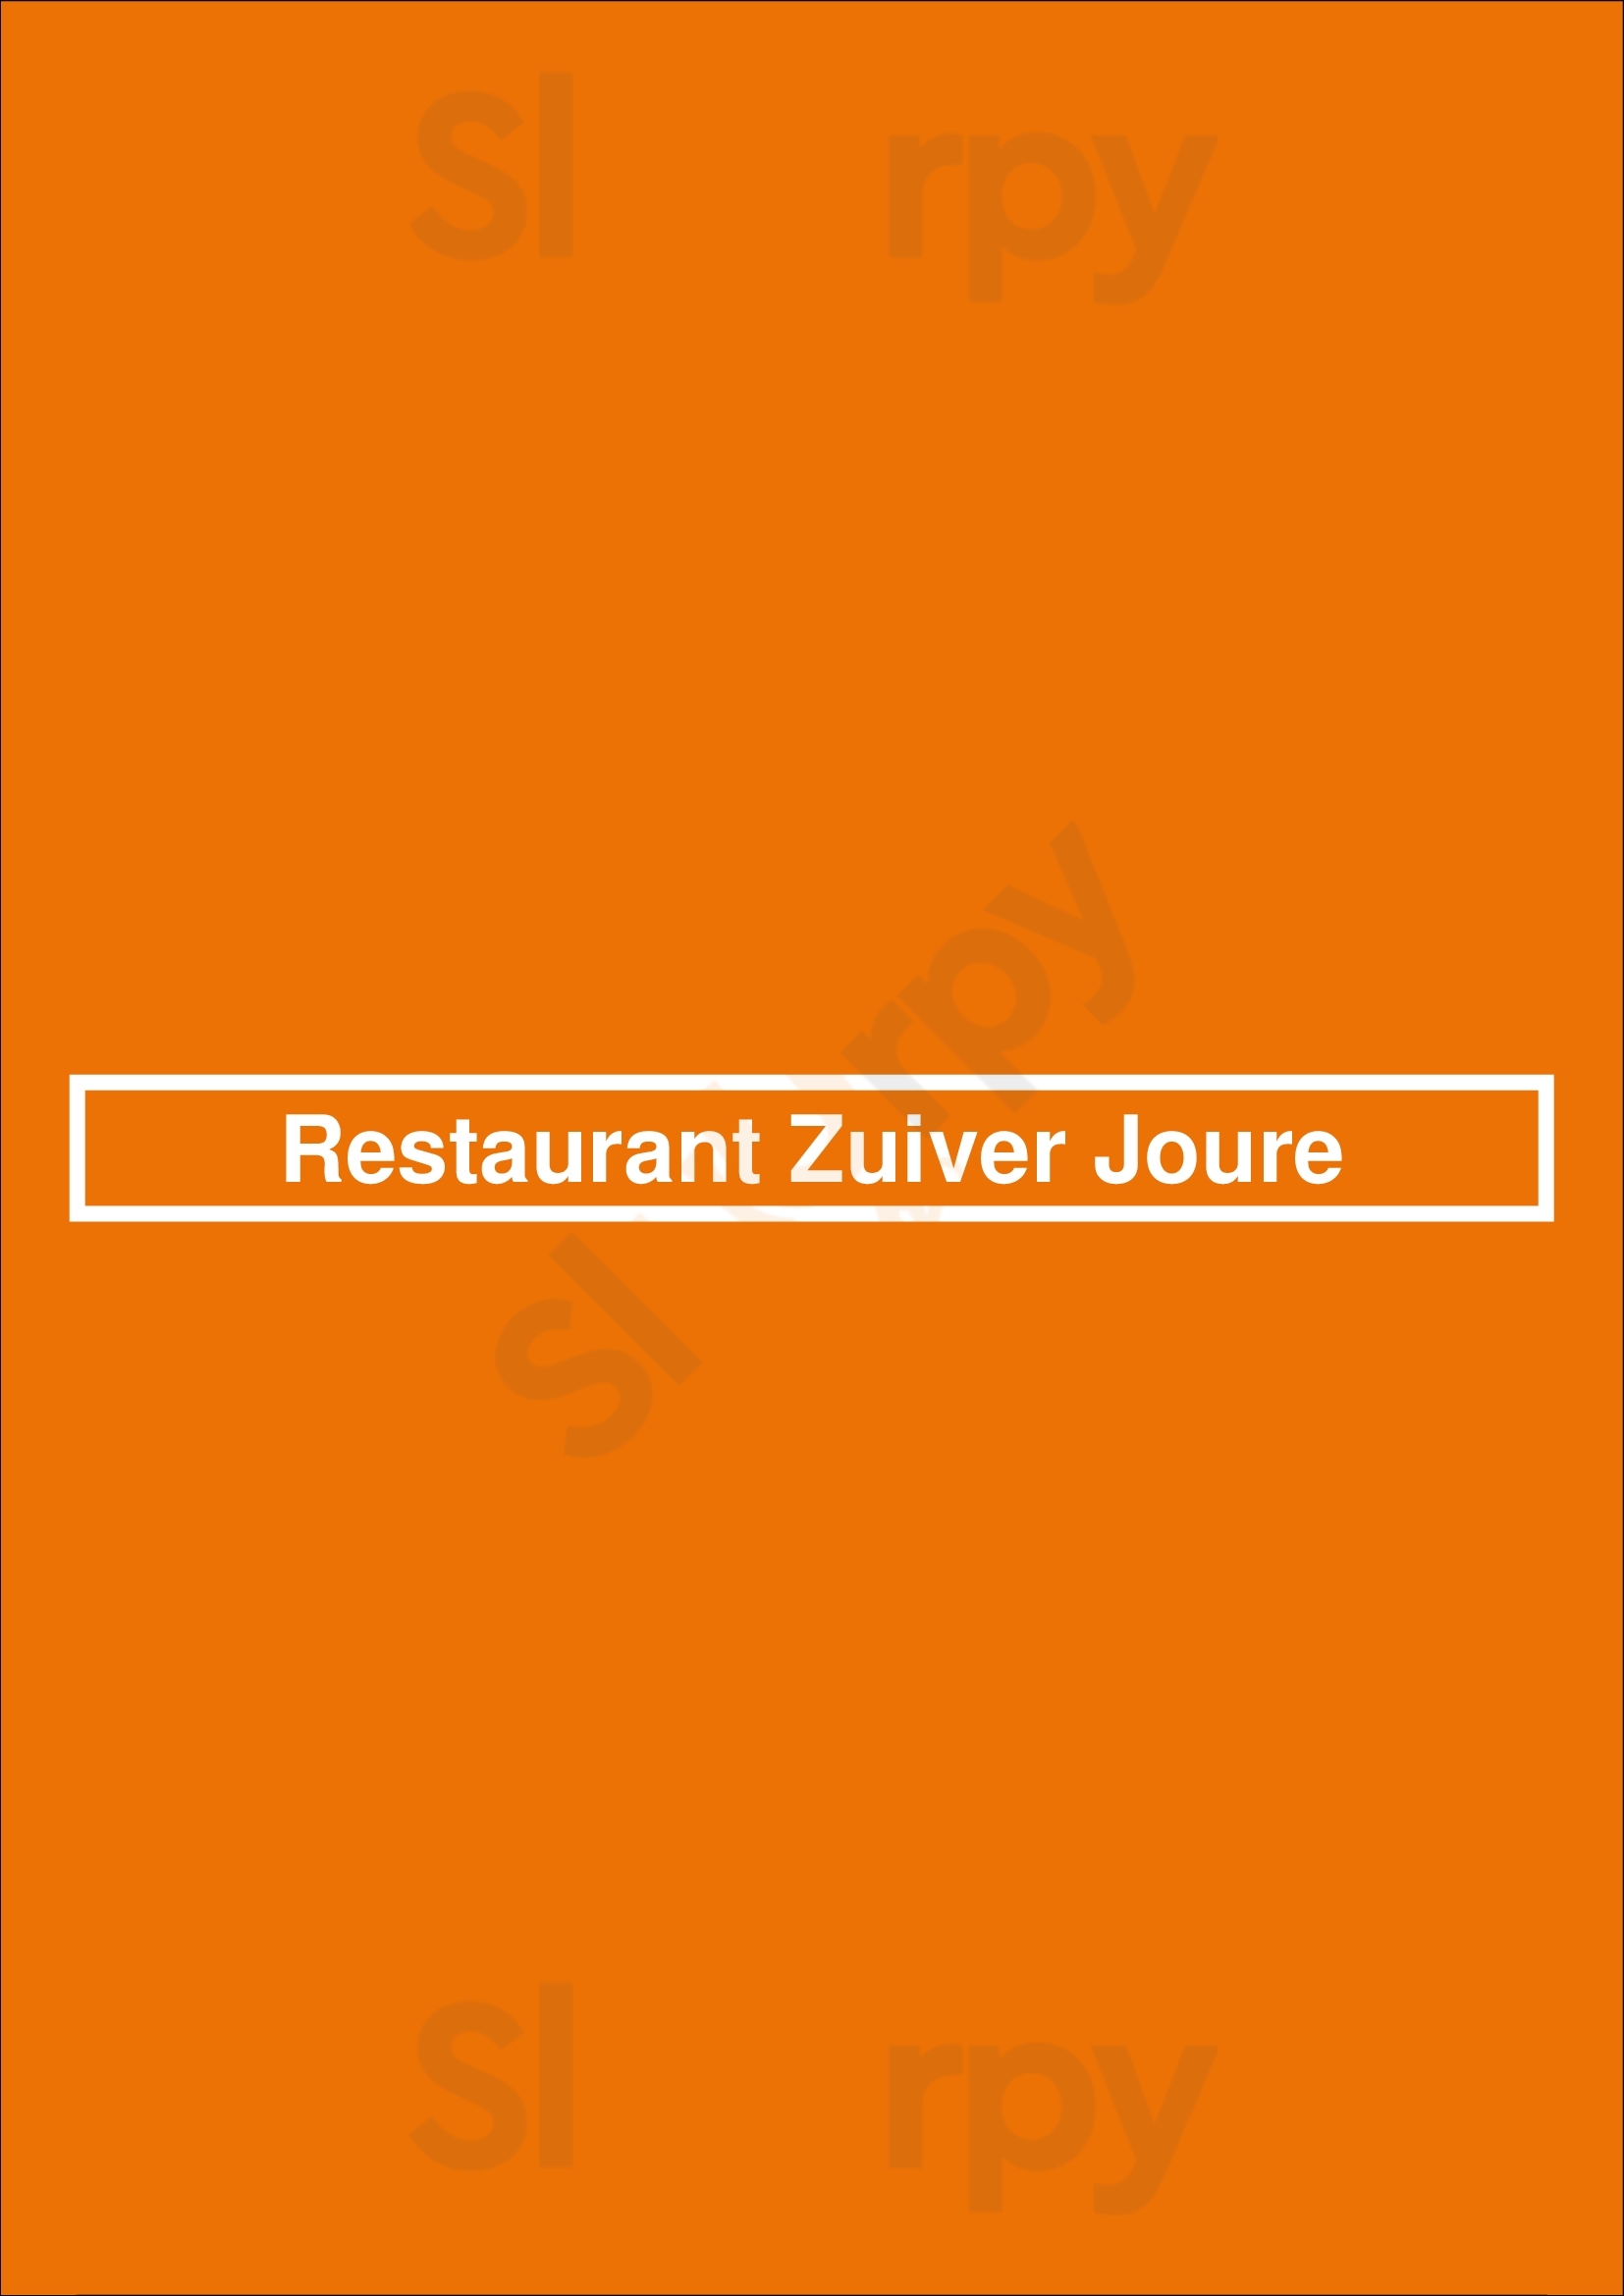 Restaurant Zuiver Joure Joure Menu - 1